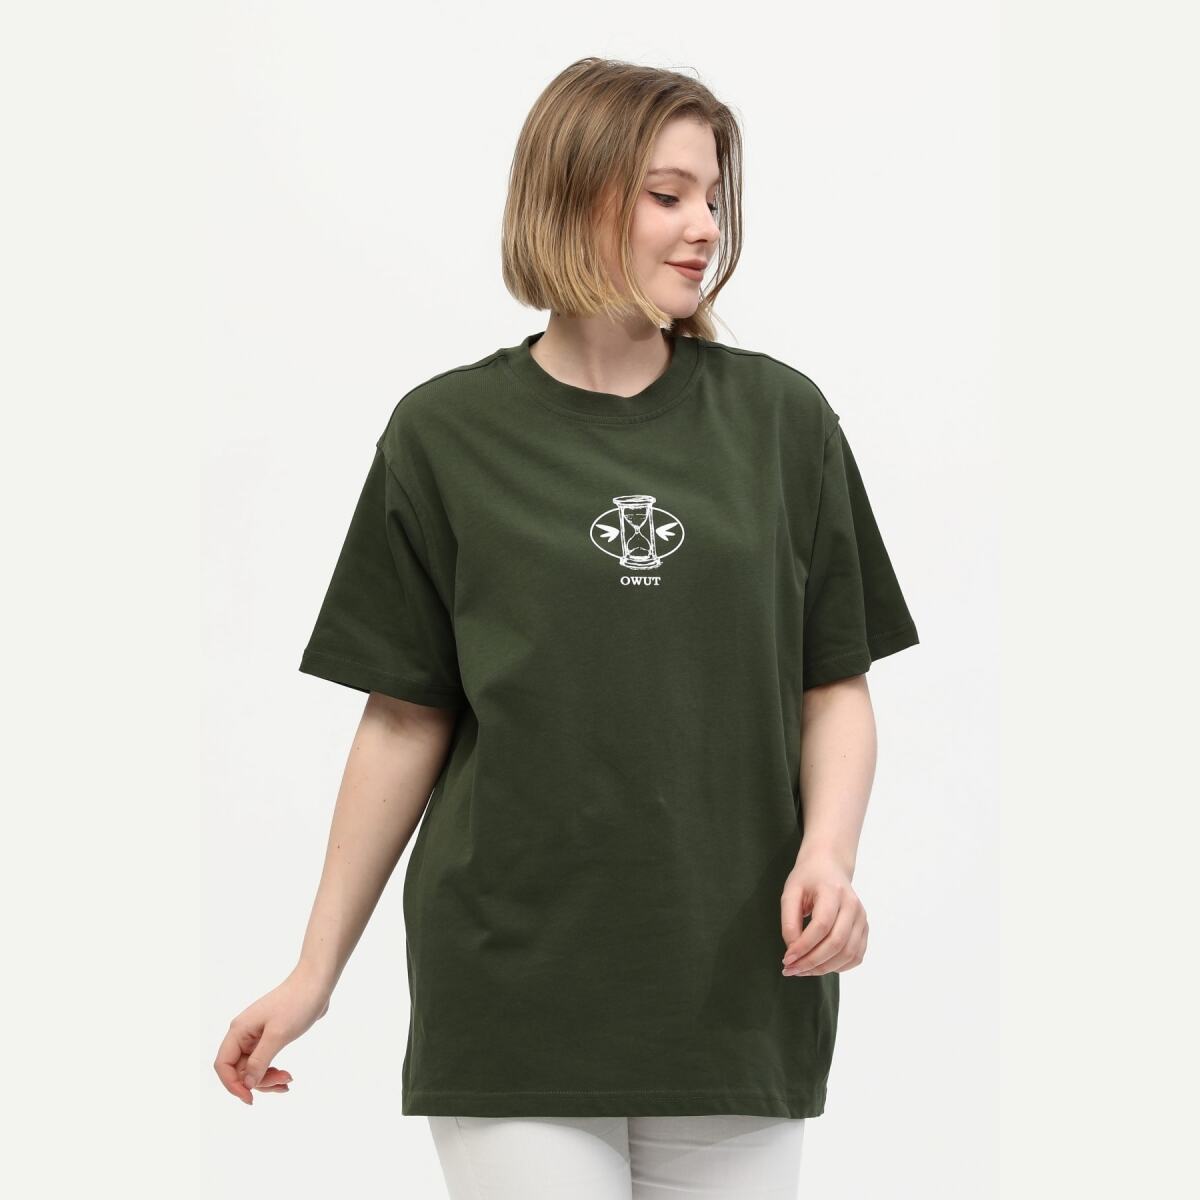 Unisex Yeşil %100 Pamuk Baskılı Oversize Dik Yaka Örme T-Shirt